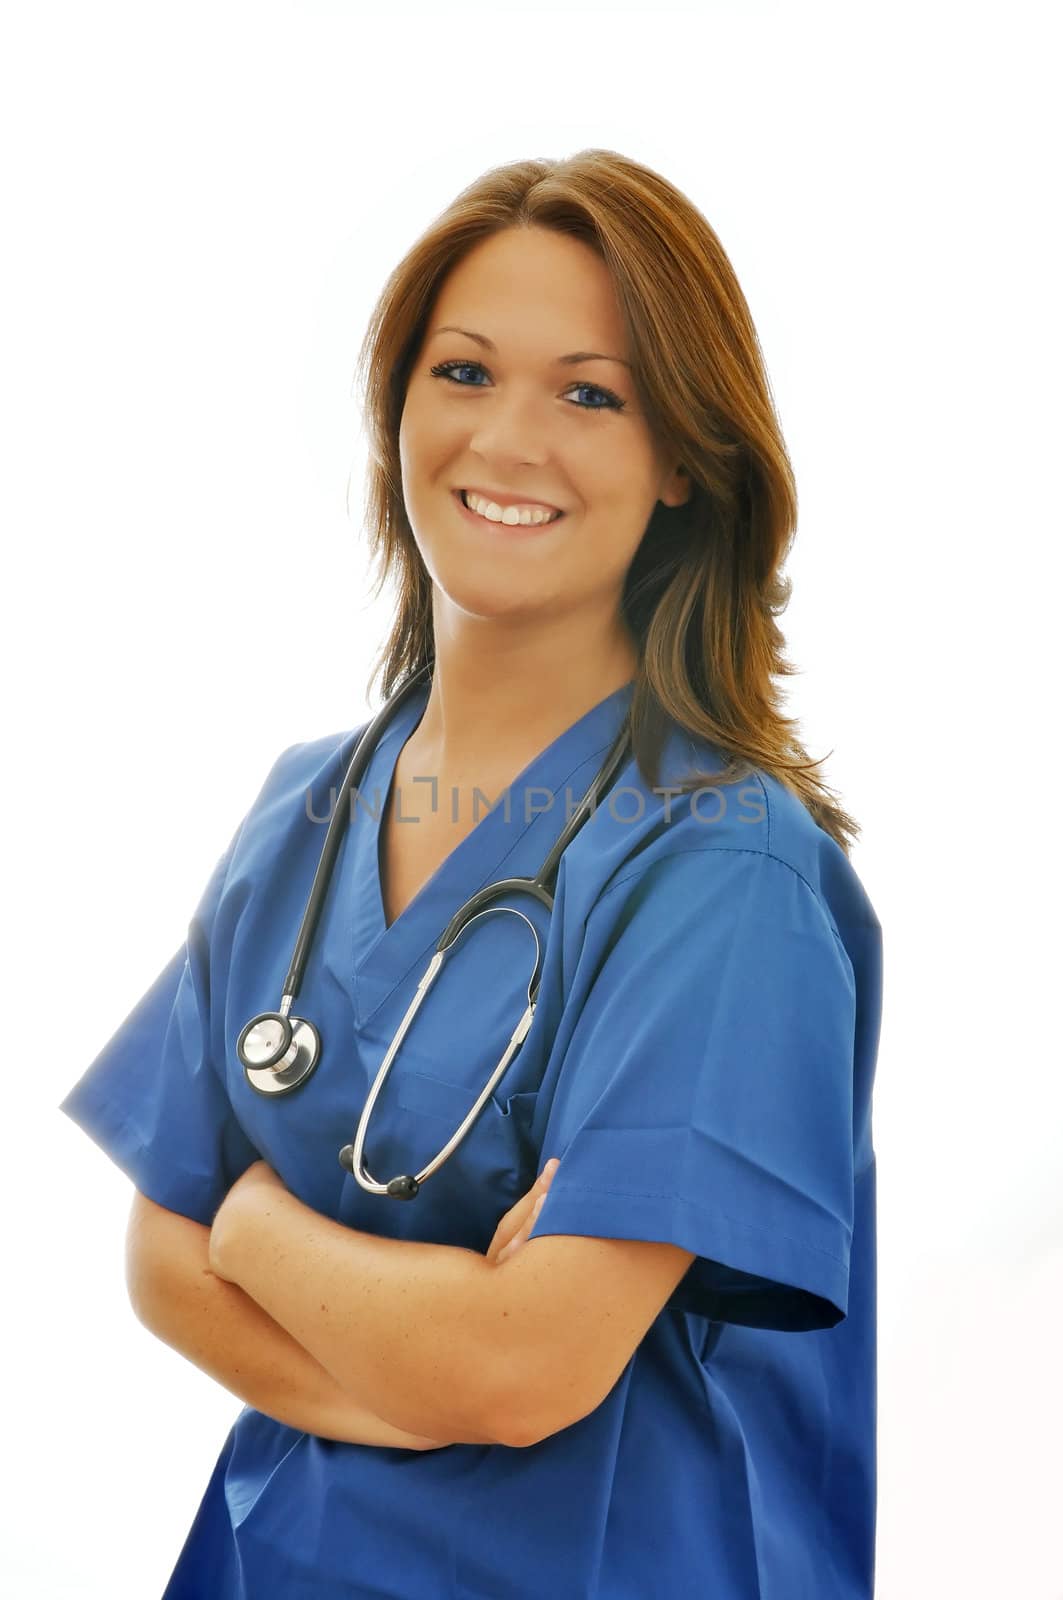 Smiling female nurse with stethoscope around neck isolated on white background. 